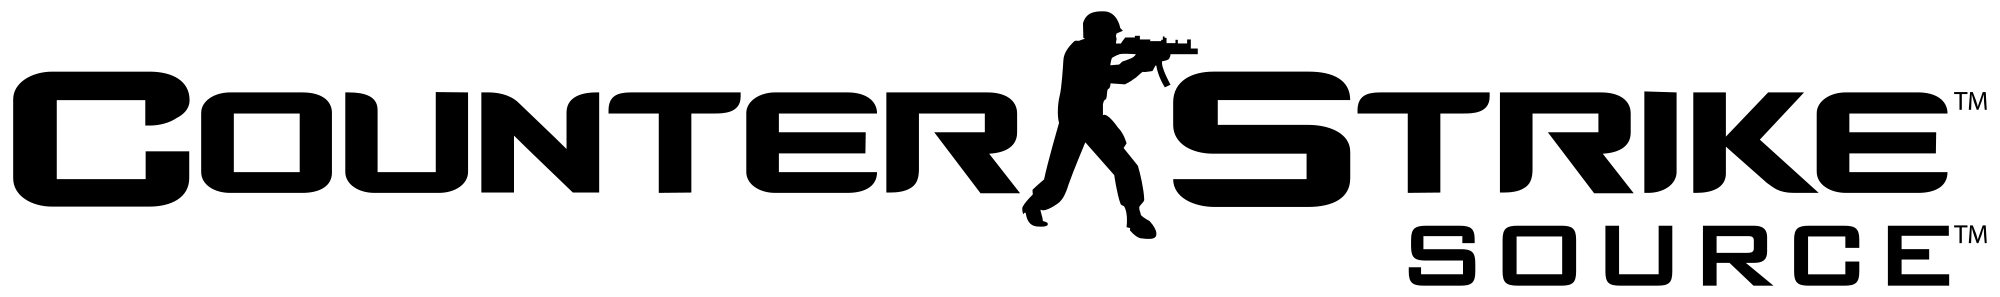 Source Logo - Counter Strike Png Logo - Free Transparent PNG Logos